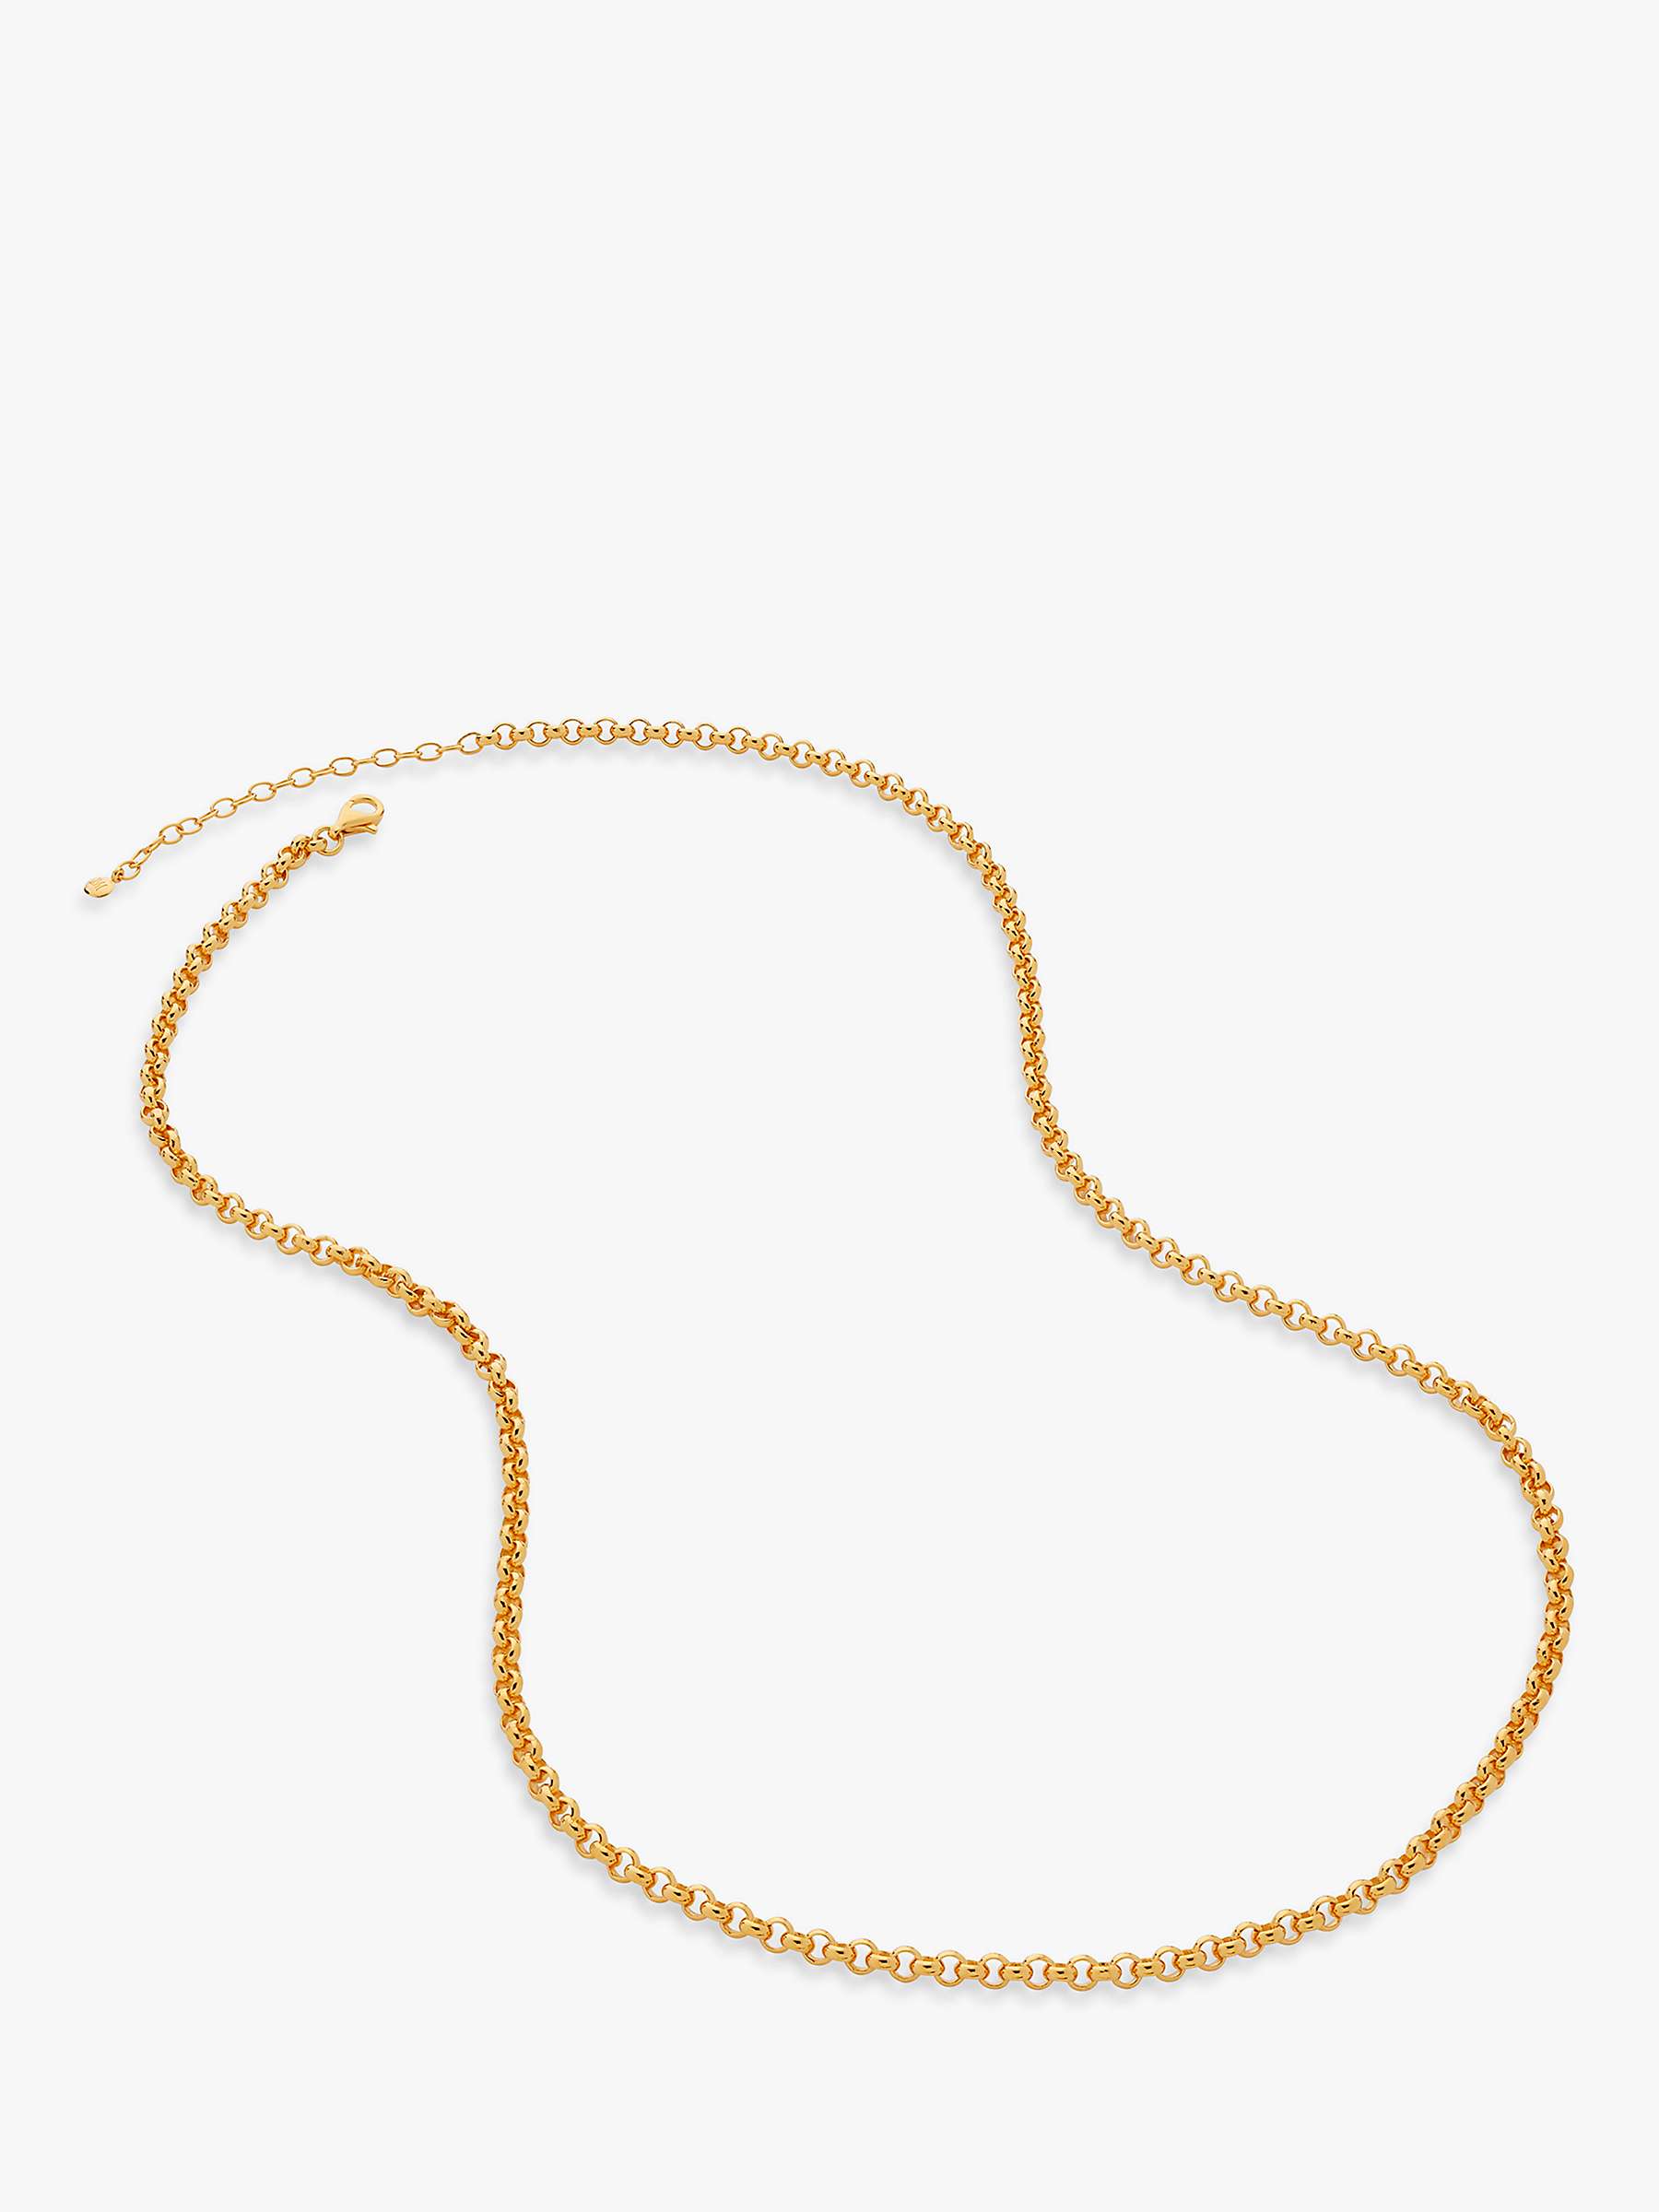 Buy Monica Vinader Vintage Chain Necklace, Gold Online at johnlewis.com